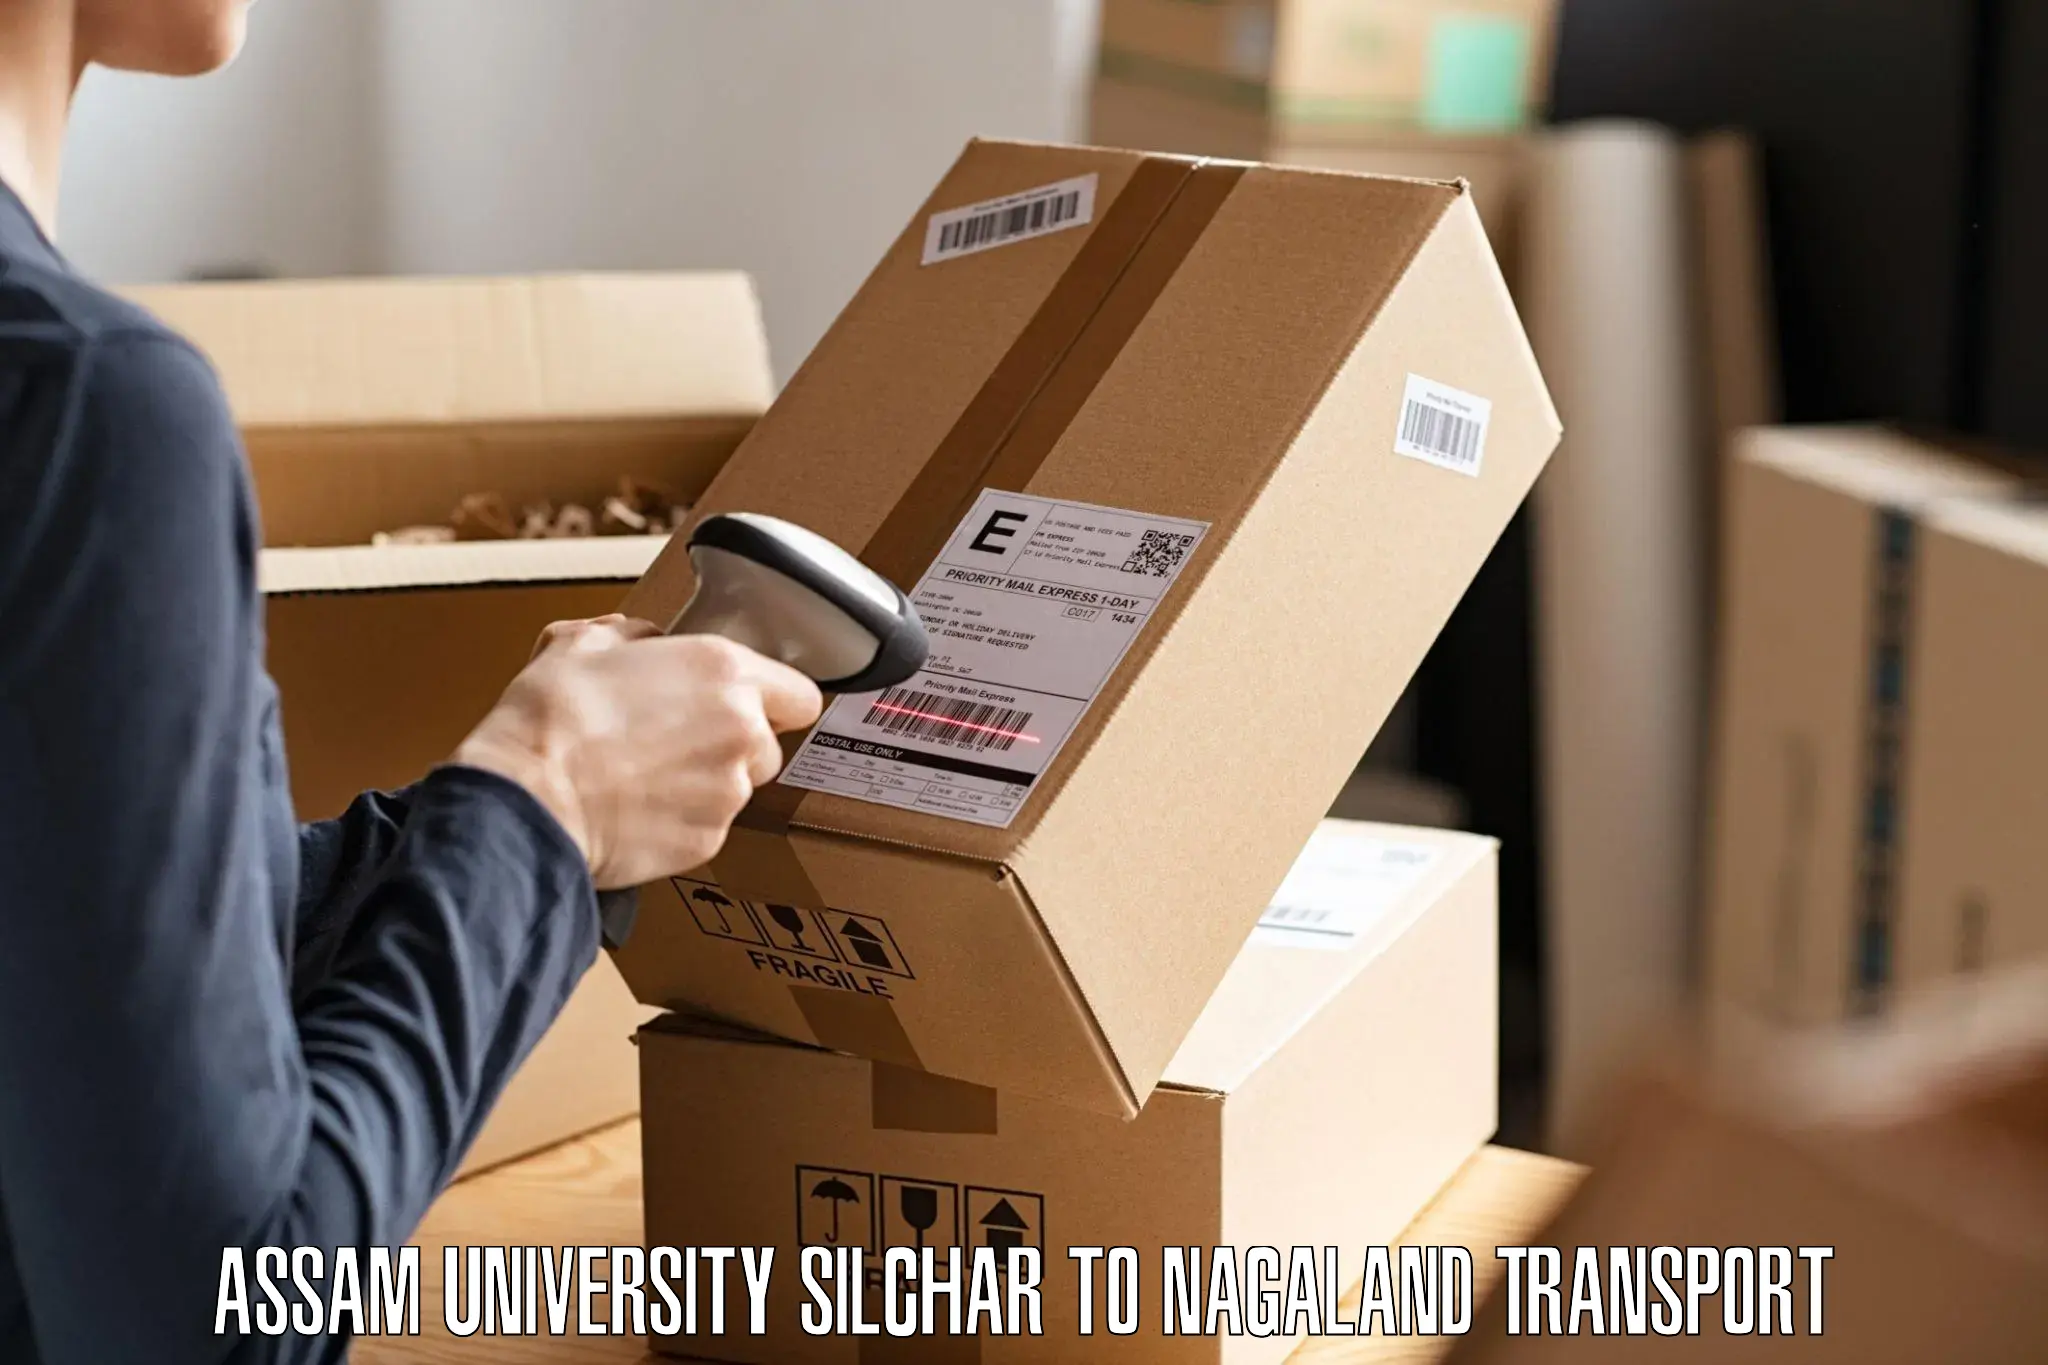 Delivery service Assam University Silchar to Zunheboto